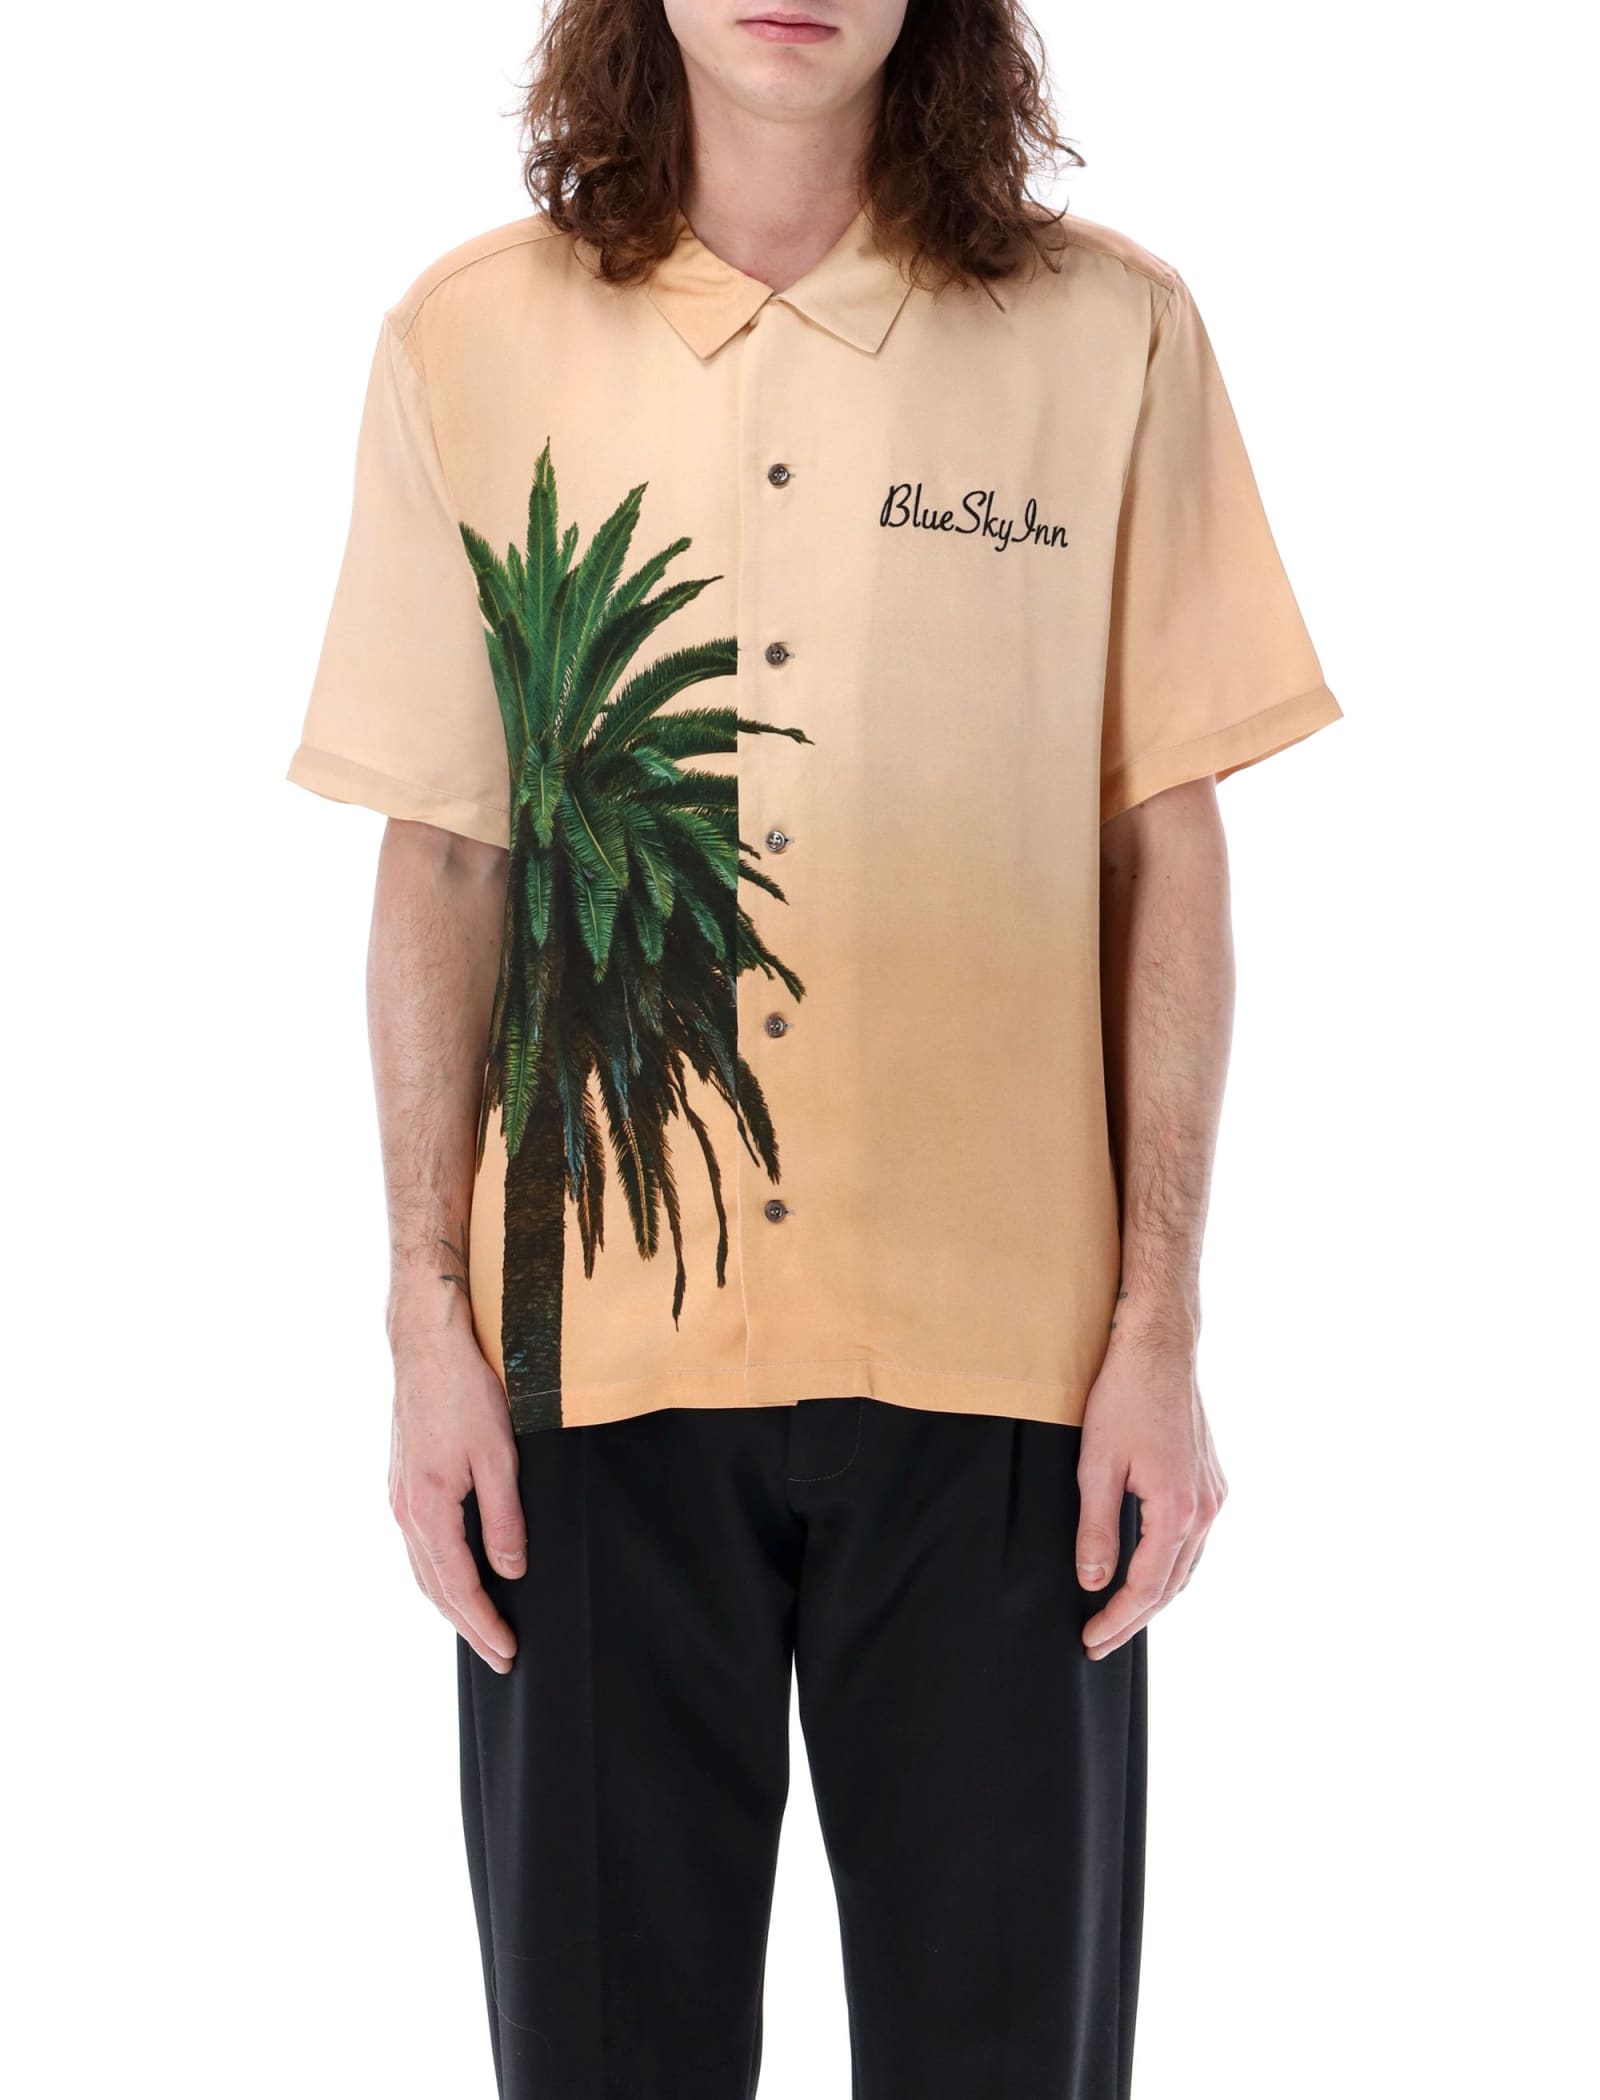 Royal Palm Shirt